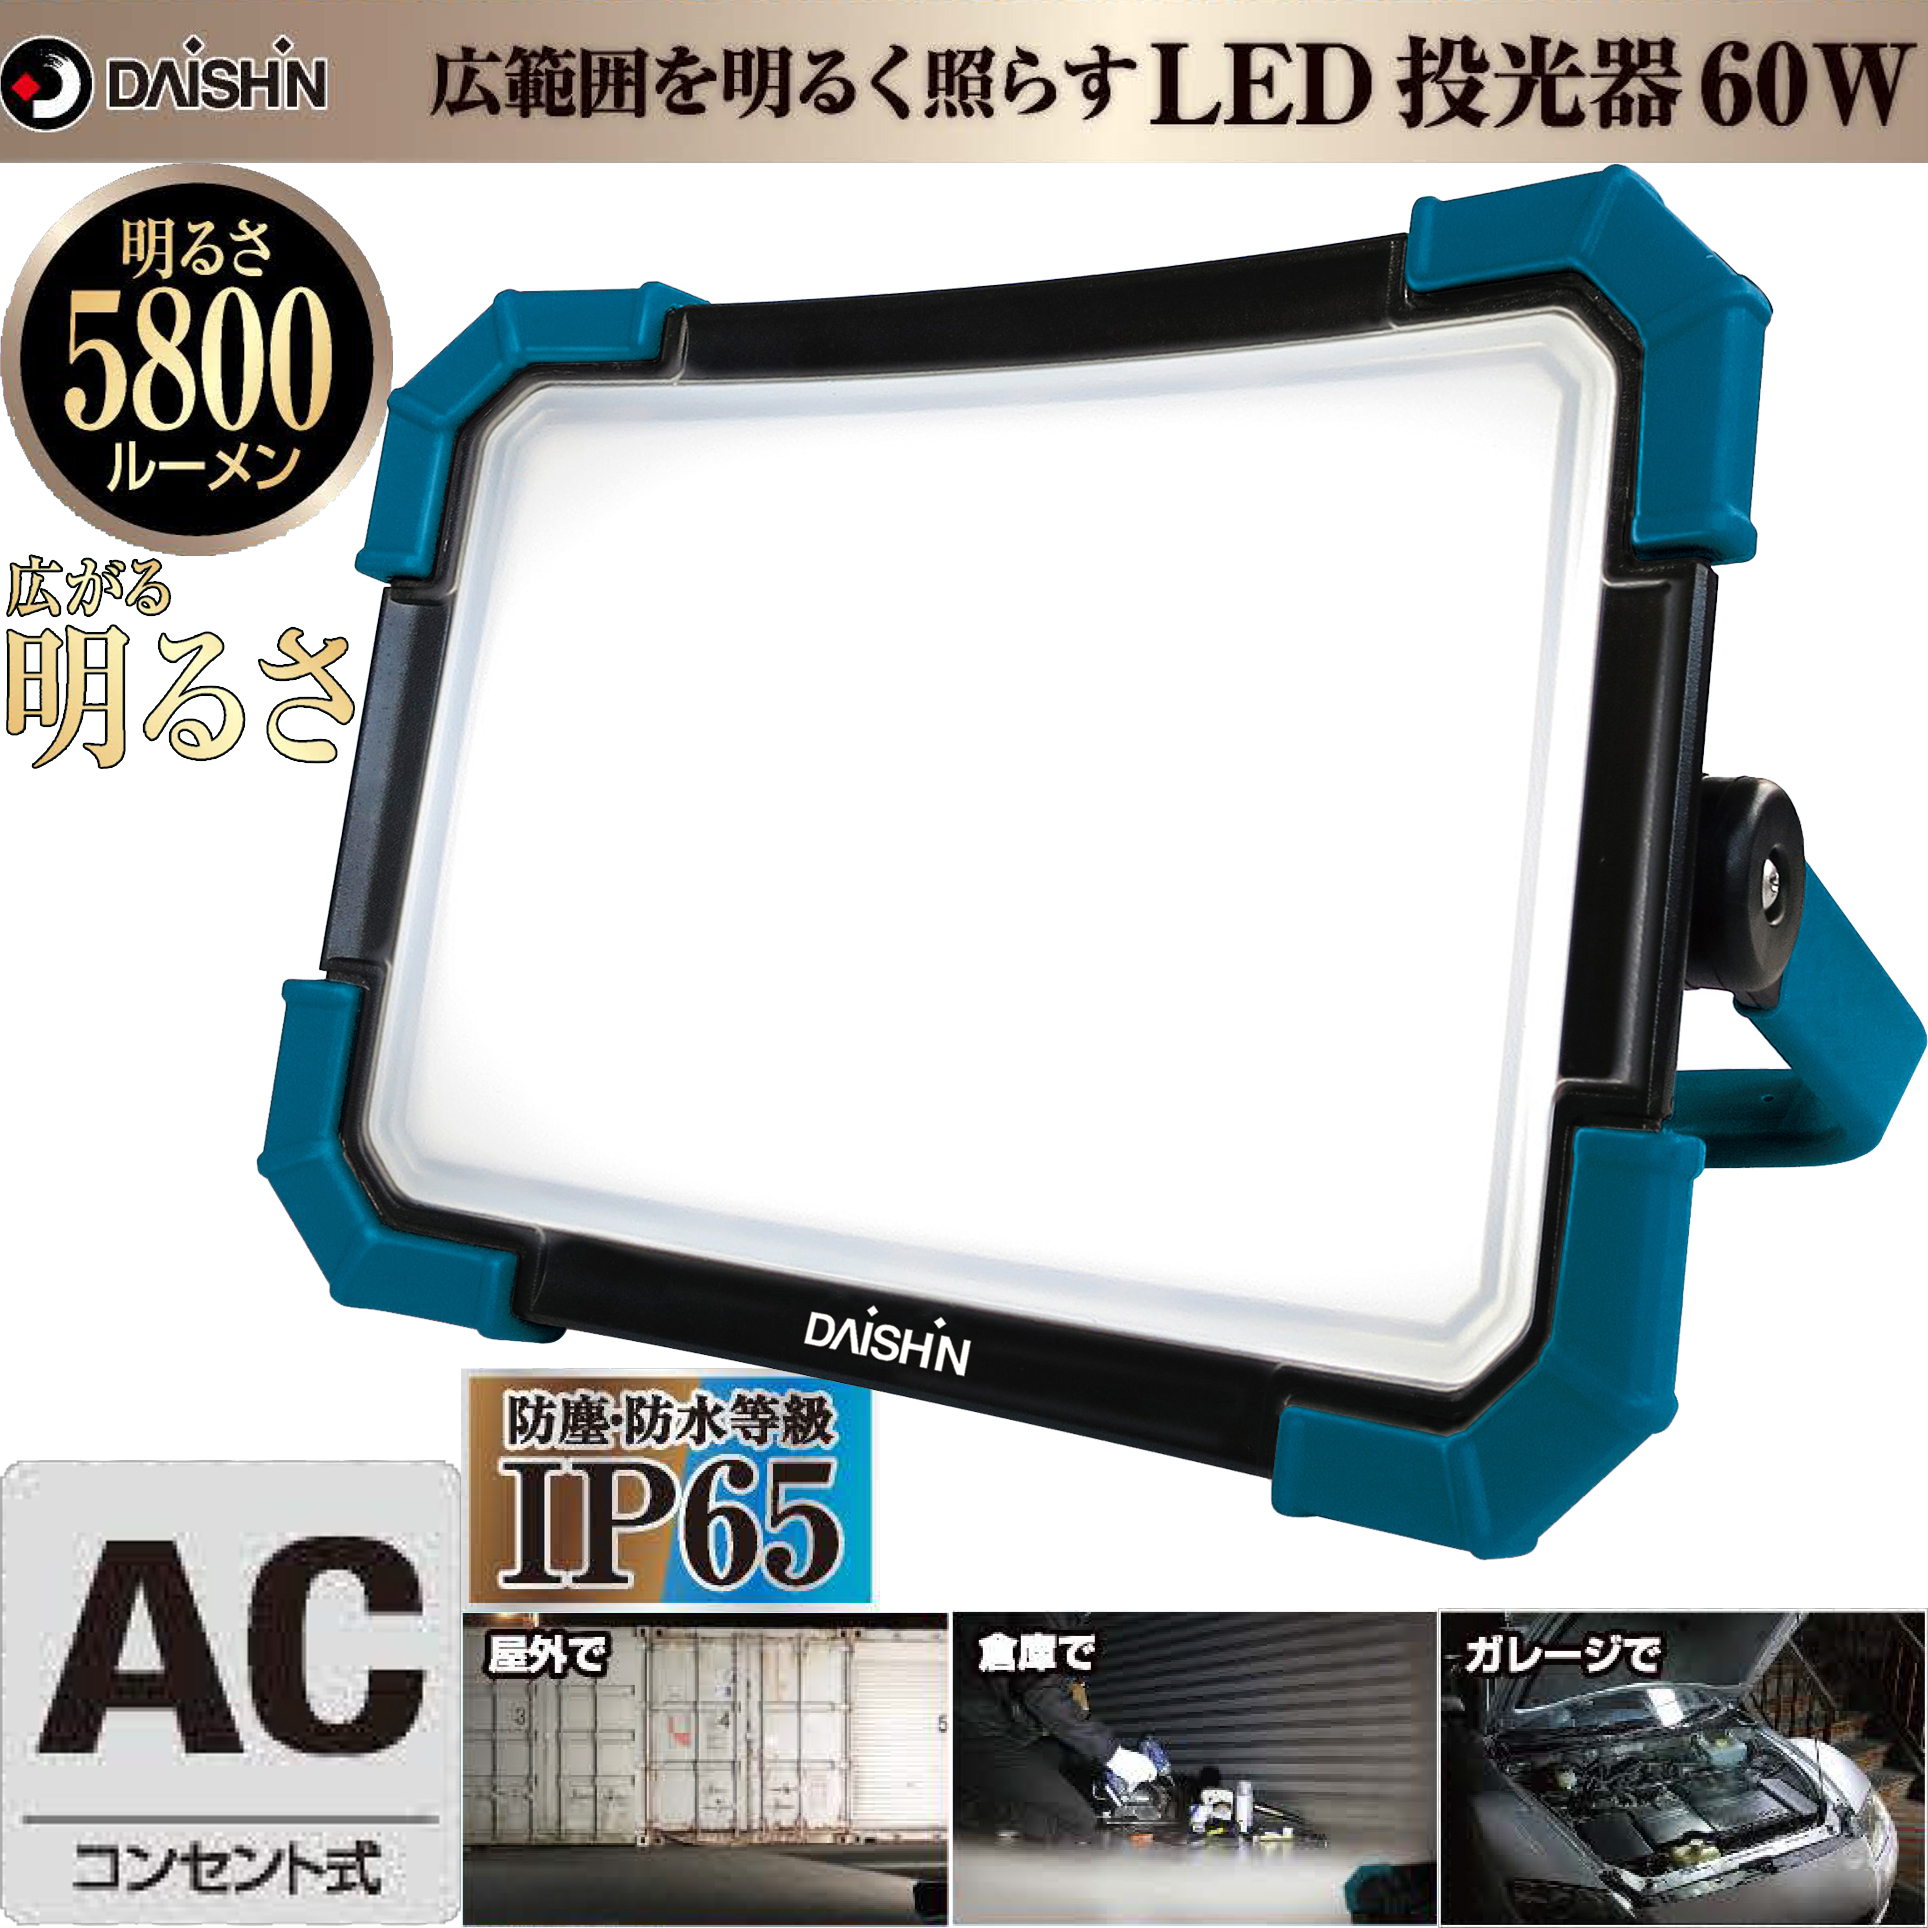 大進 LED 投光器 コンセント式 AC DL-5800WL LED60W 5800lm 投光器